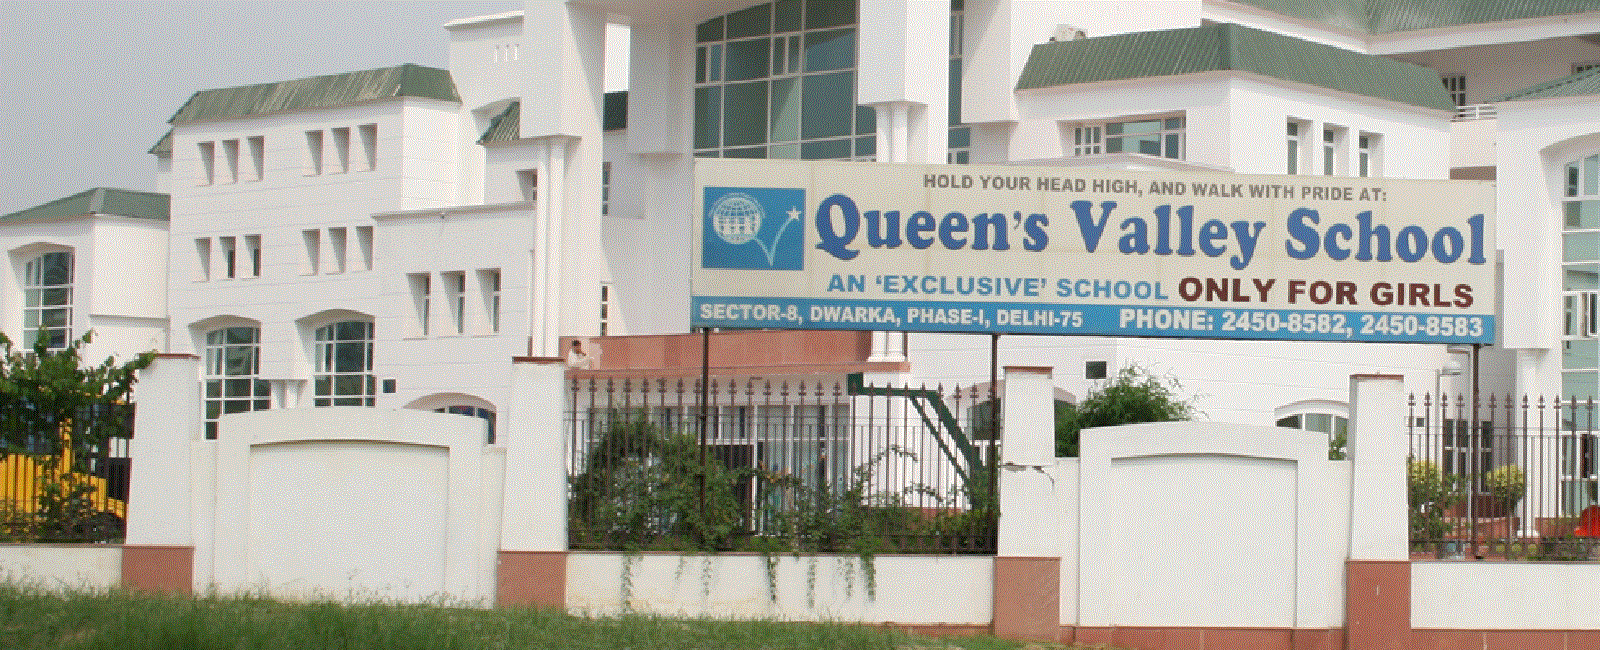 Queens Valley School Education | Schools